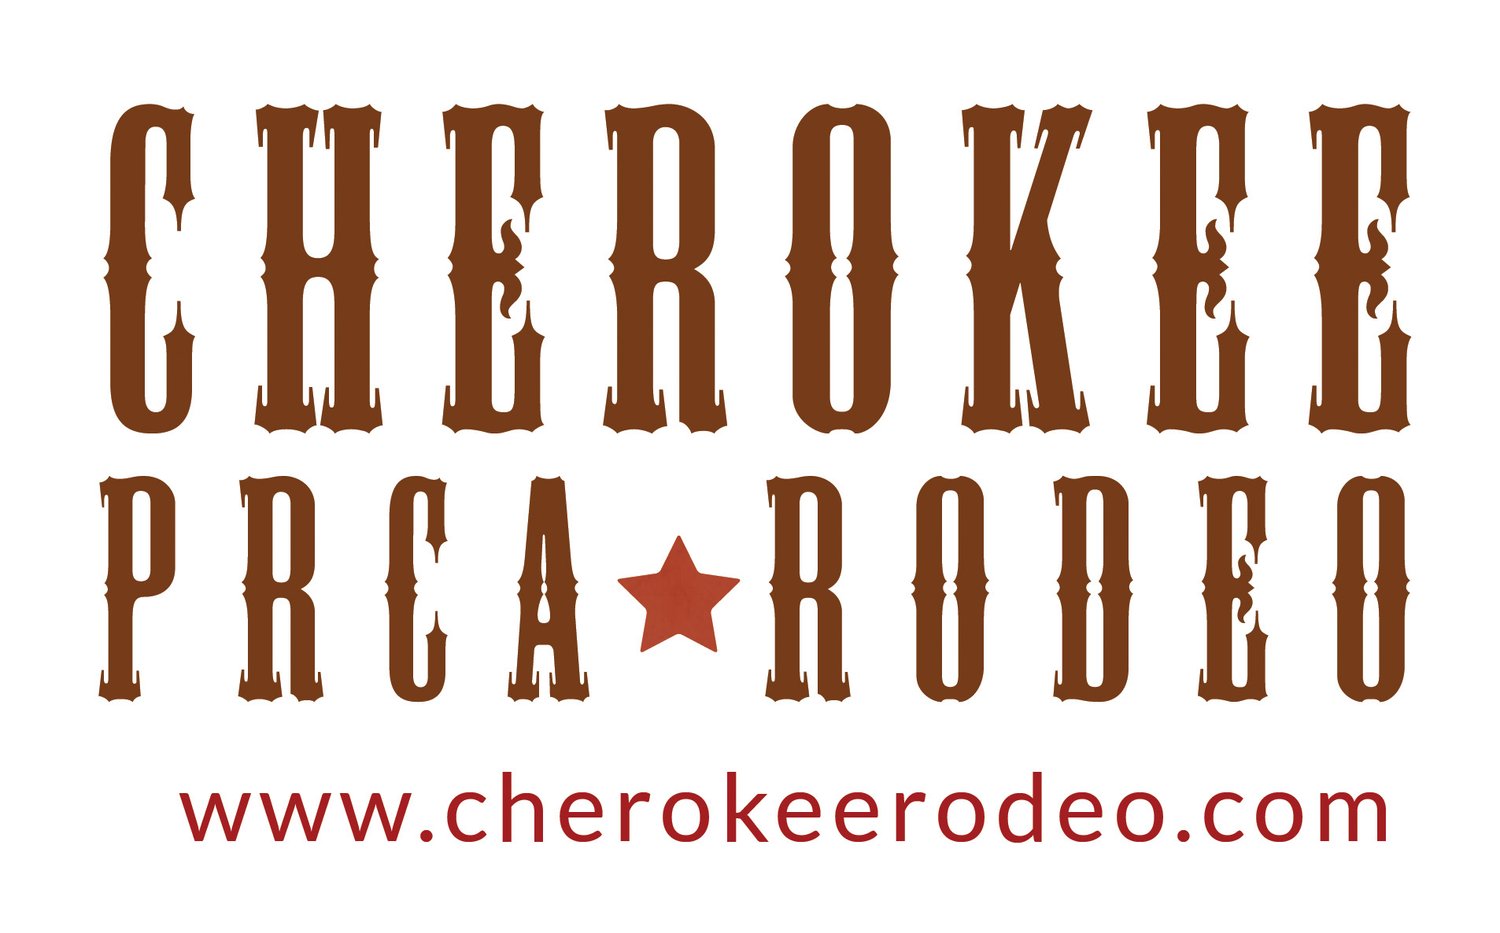 CherokeeRodeo